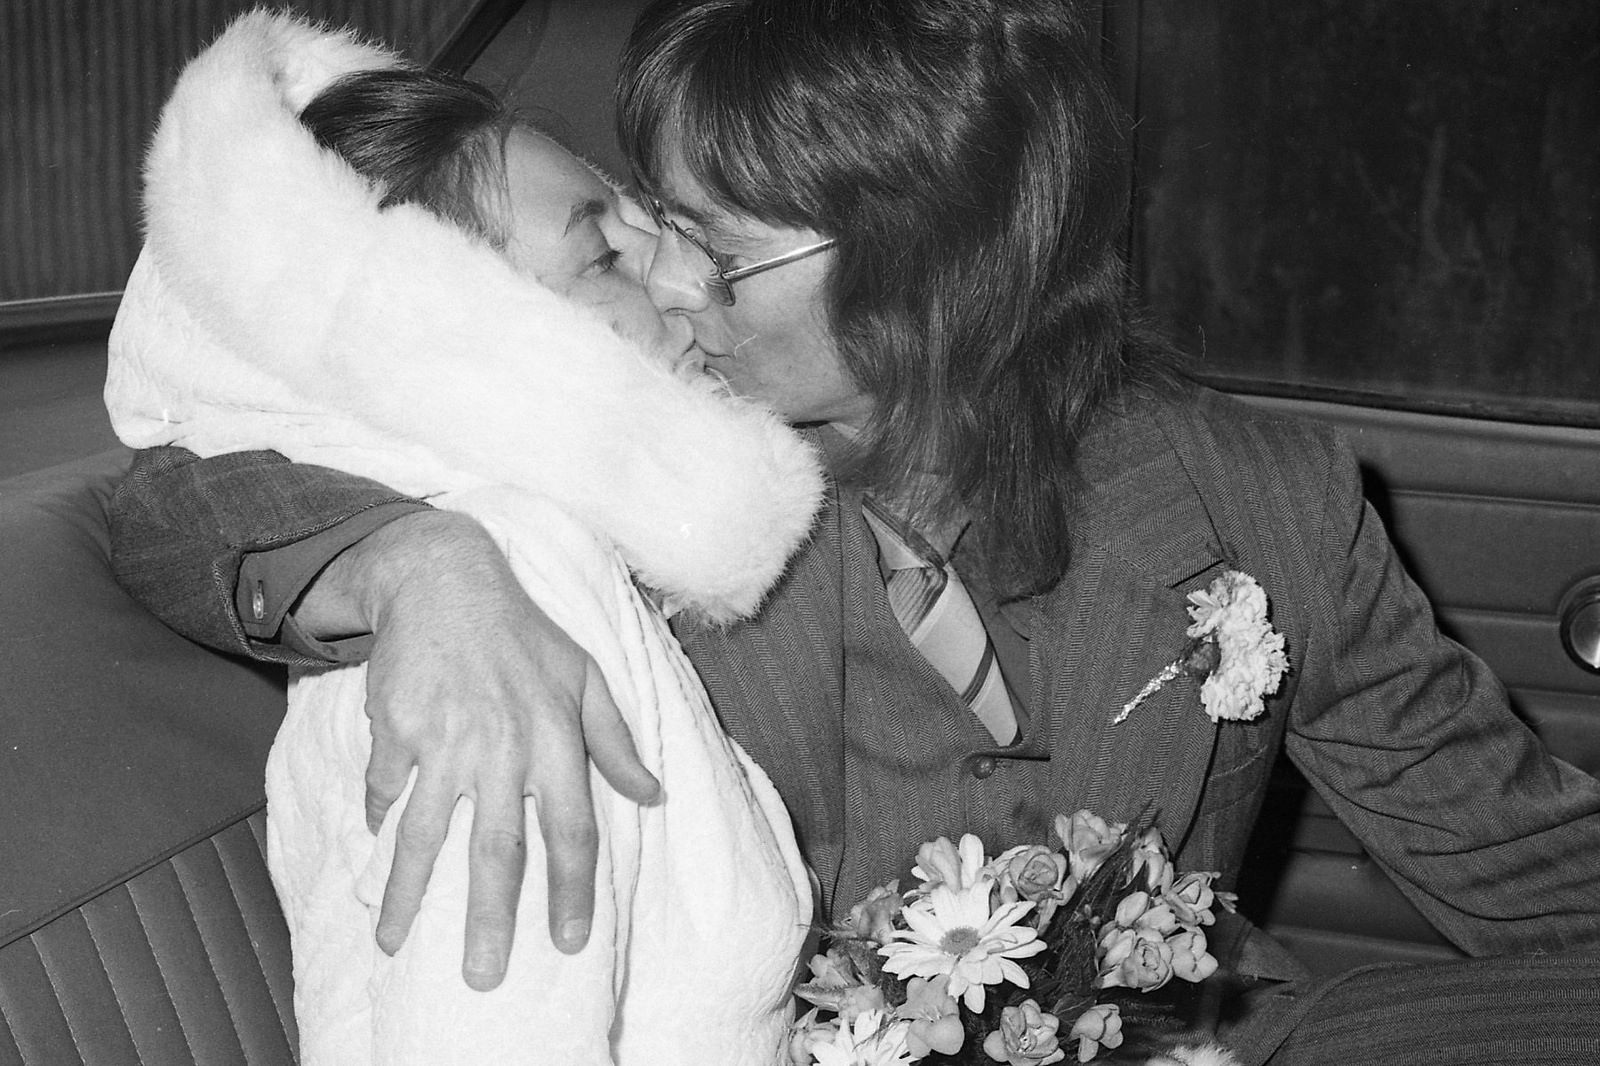 wedding1972eastleighthampshireukweddingsnapshots